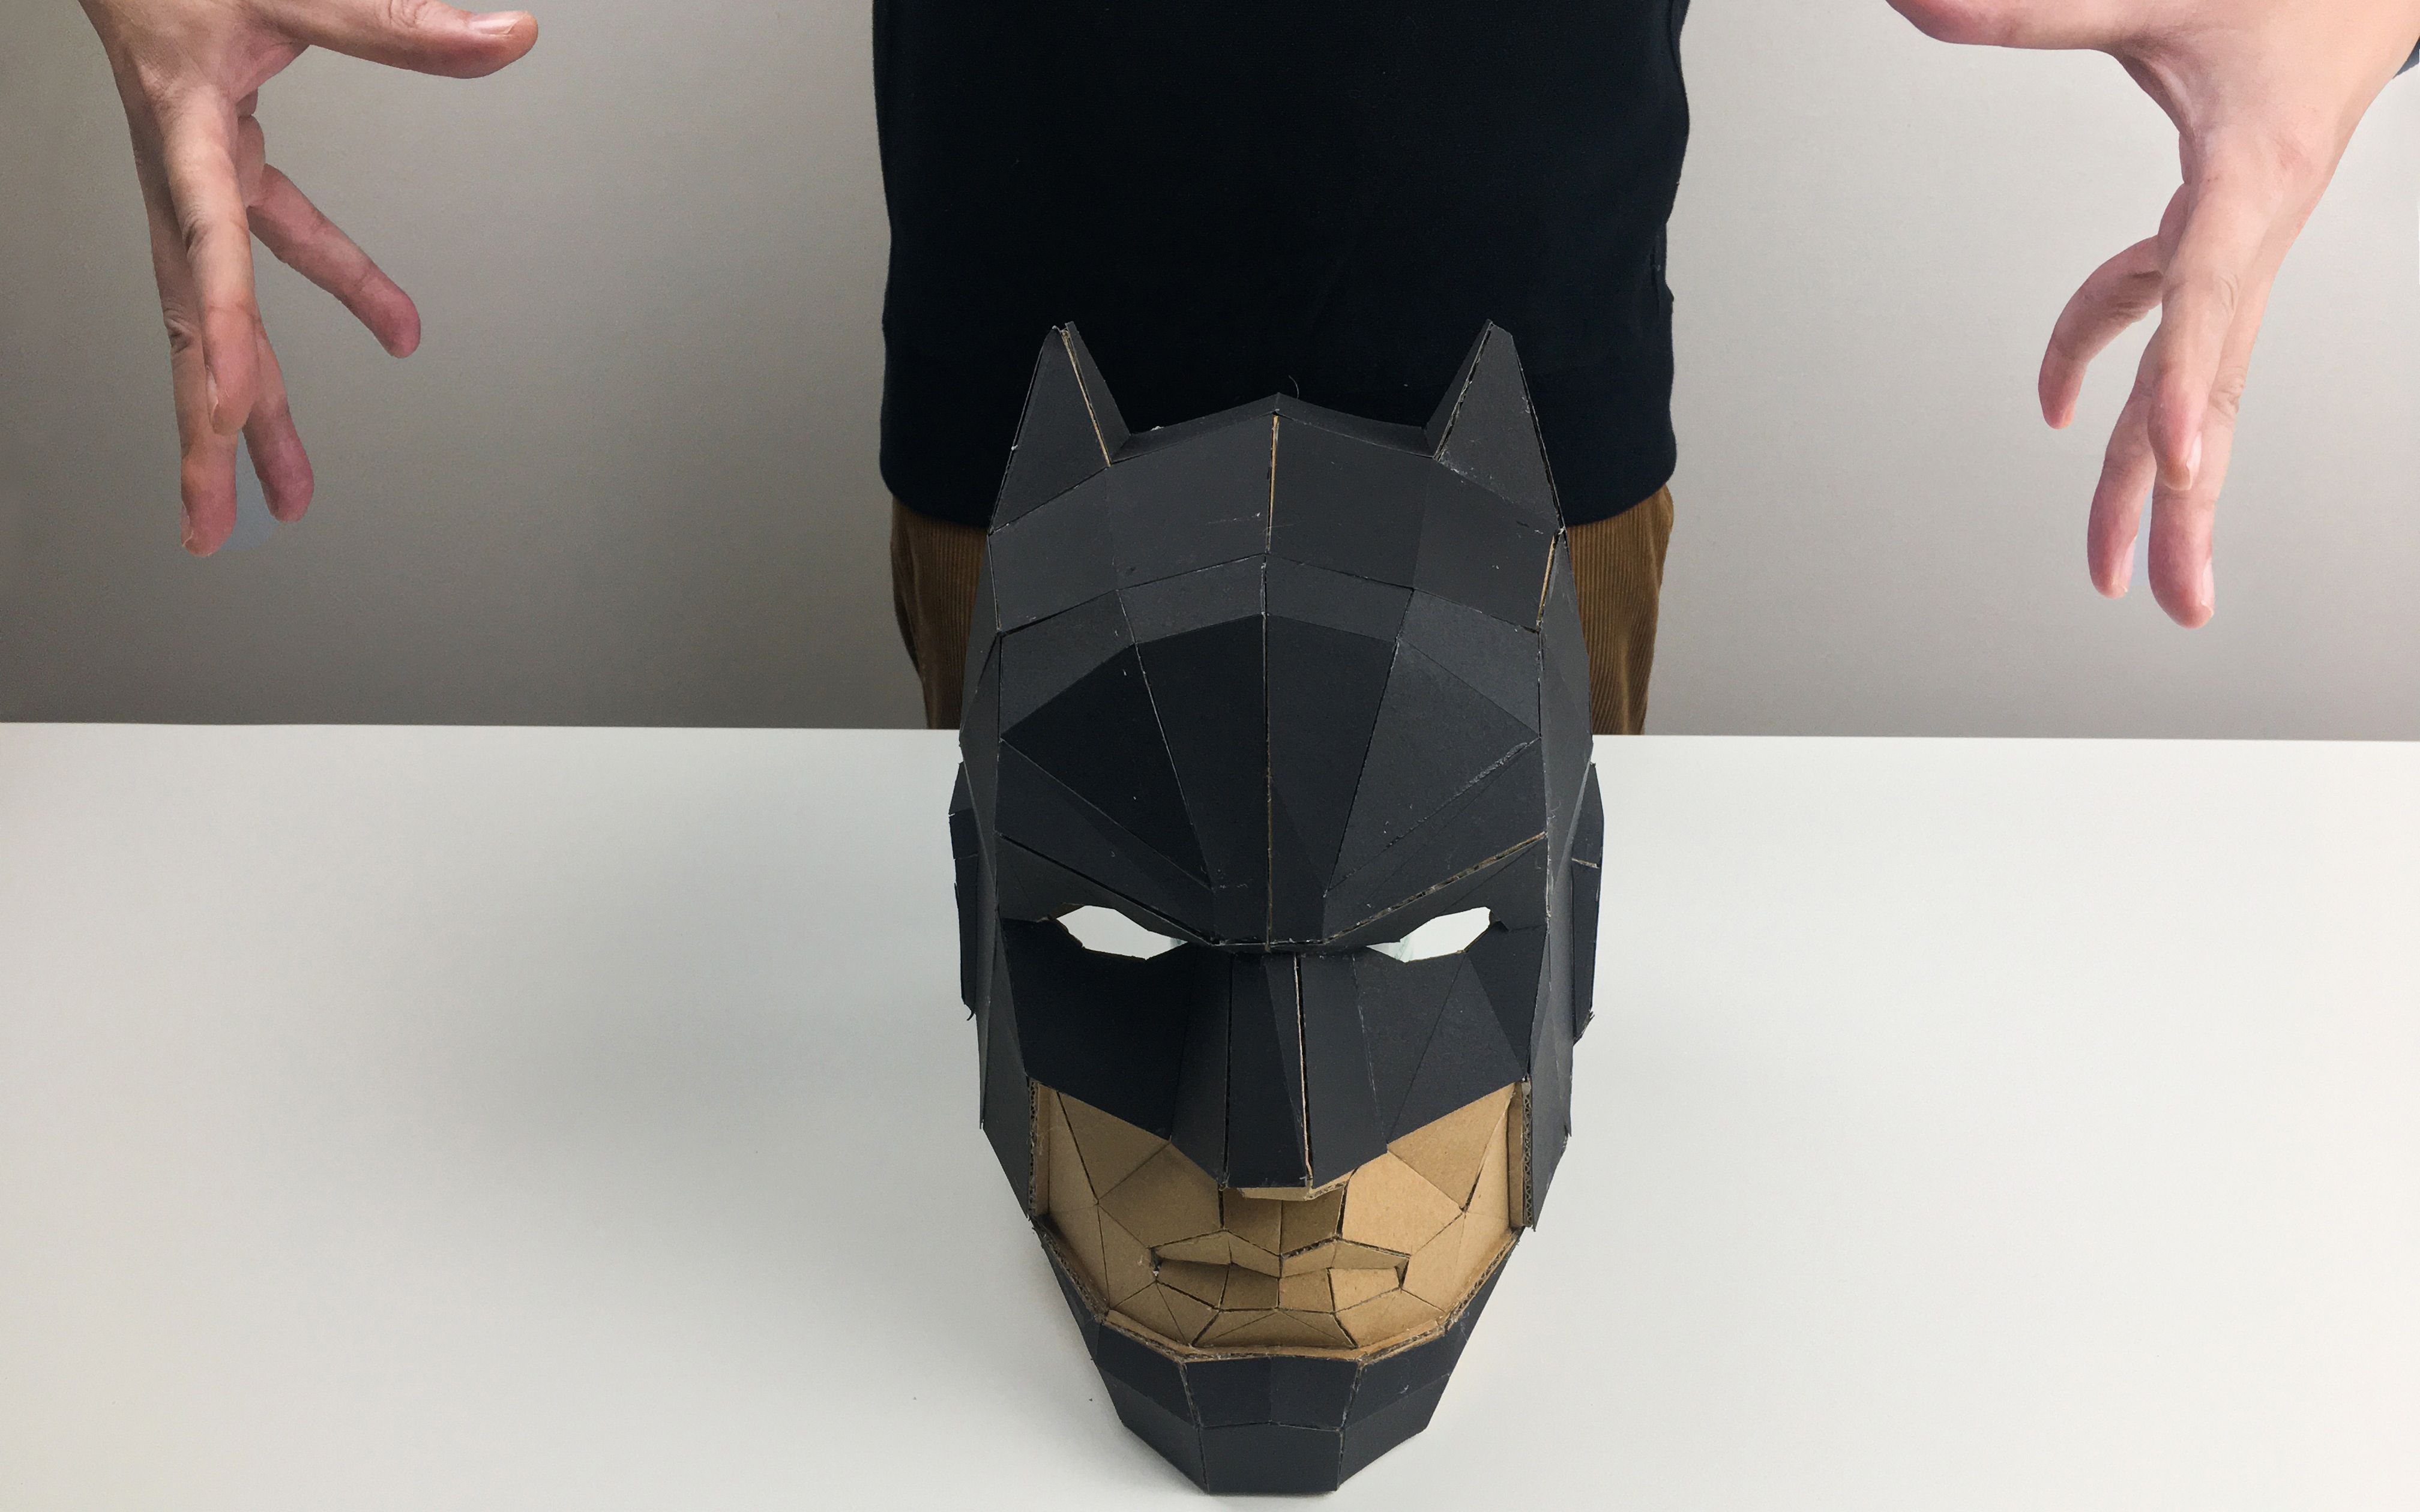 【纸板自制】自制蝙蝠侠头盔教程来了!做作业咯!